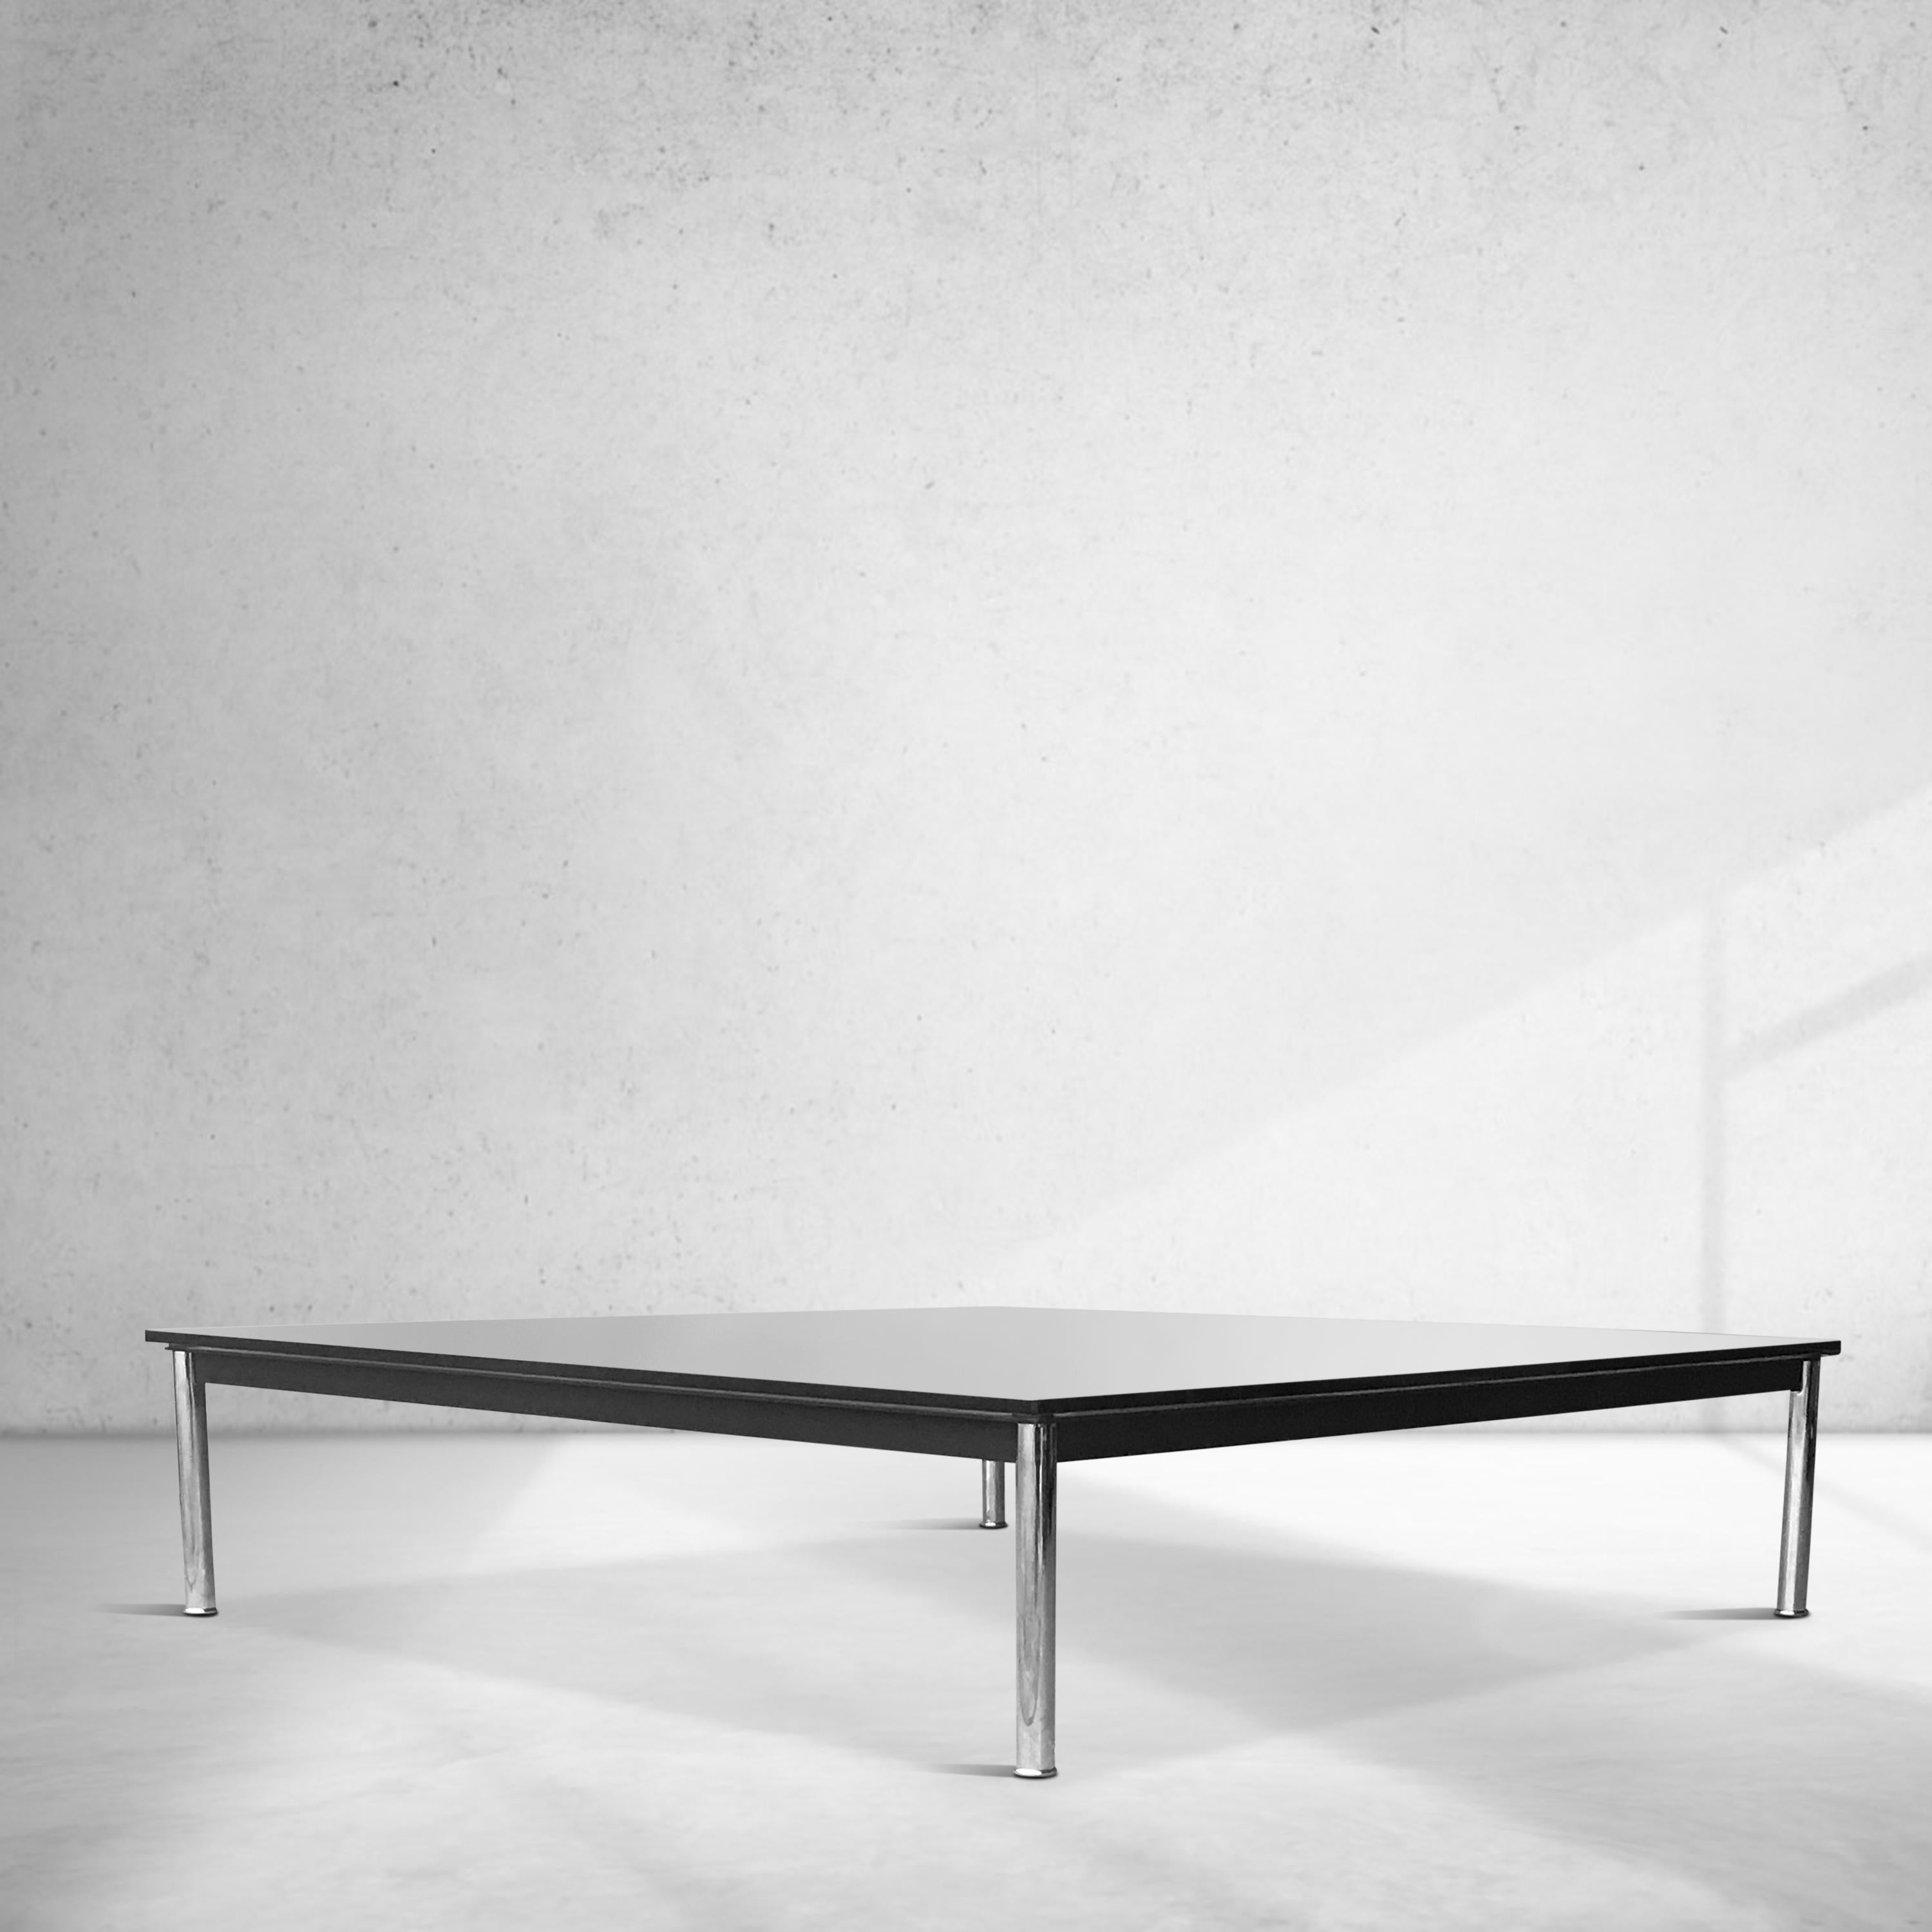 Table basse classique LC10 par Le Corbusier, Pierre Jeanneret et Charlotte Perriand pour Cassina.

Production des années 1990, avec marquage d'origine sur le côté du cadre, dans le plus grand 140  x 140 variante.

La table est accompagnée de la